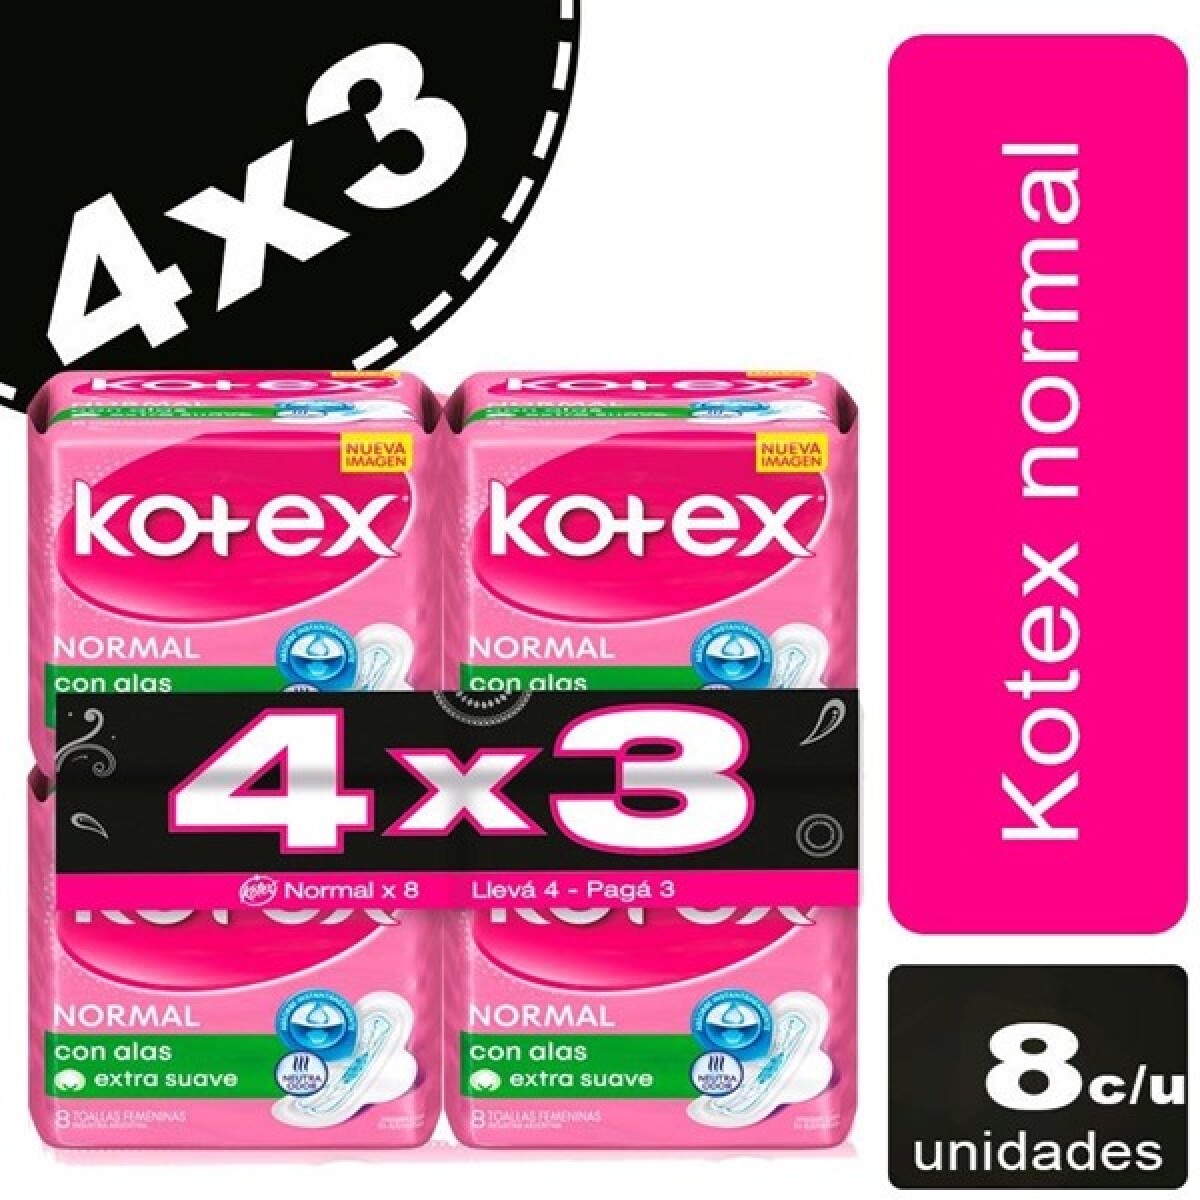 KOTEX NORMAL CON ALAS 8 4X3 